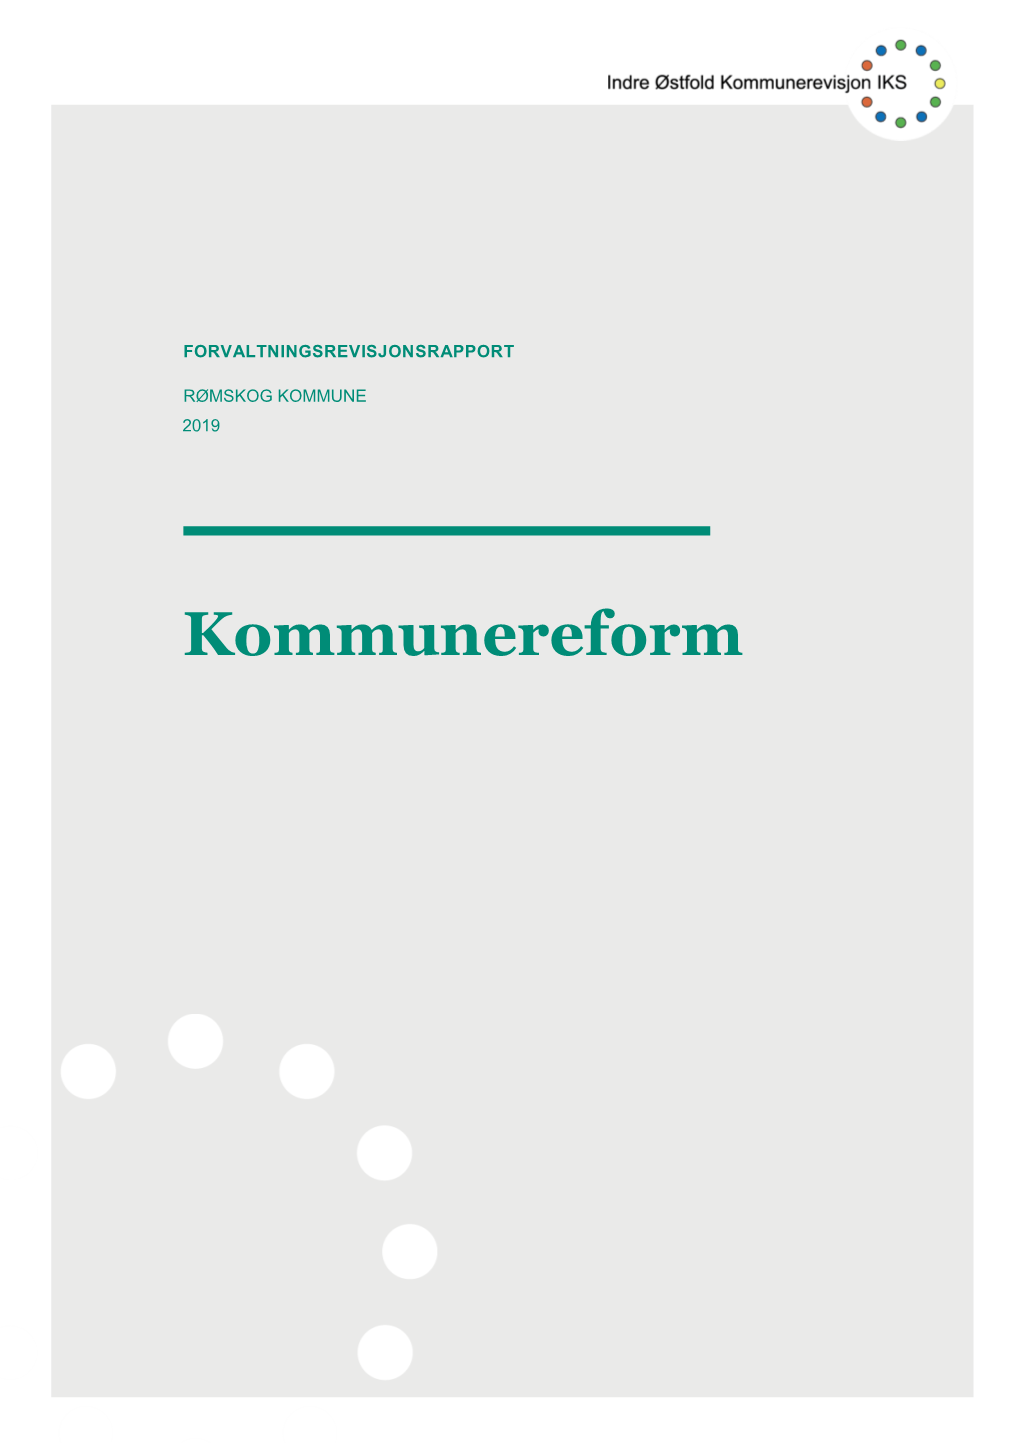 Rømskog Kommune 2019 – Kommunereform